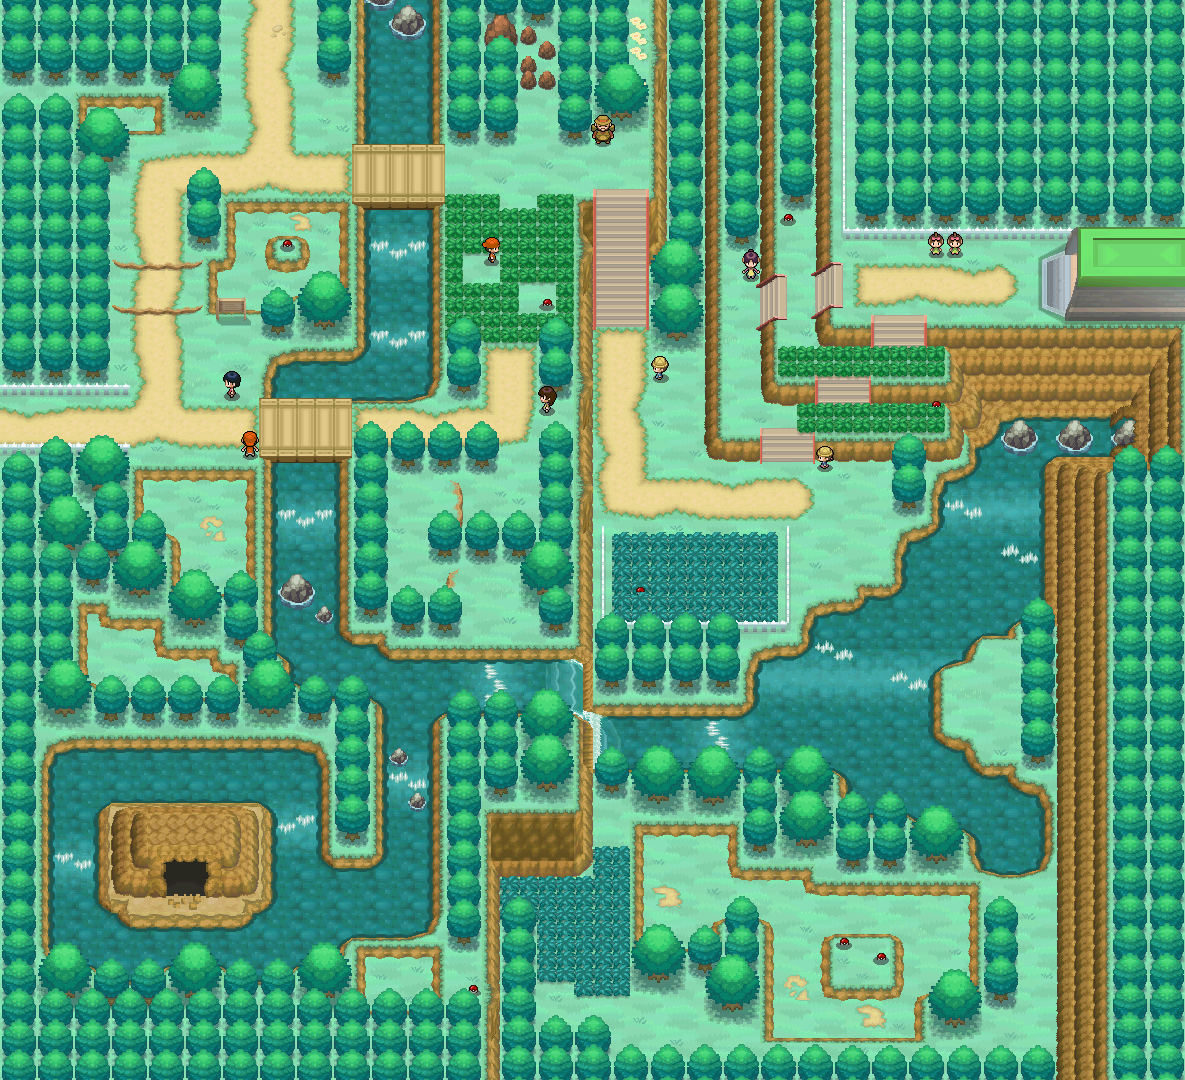 Route 20 - Pokémon Vortex Wiki